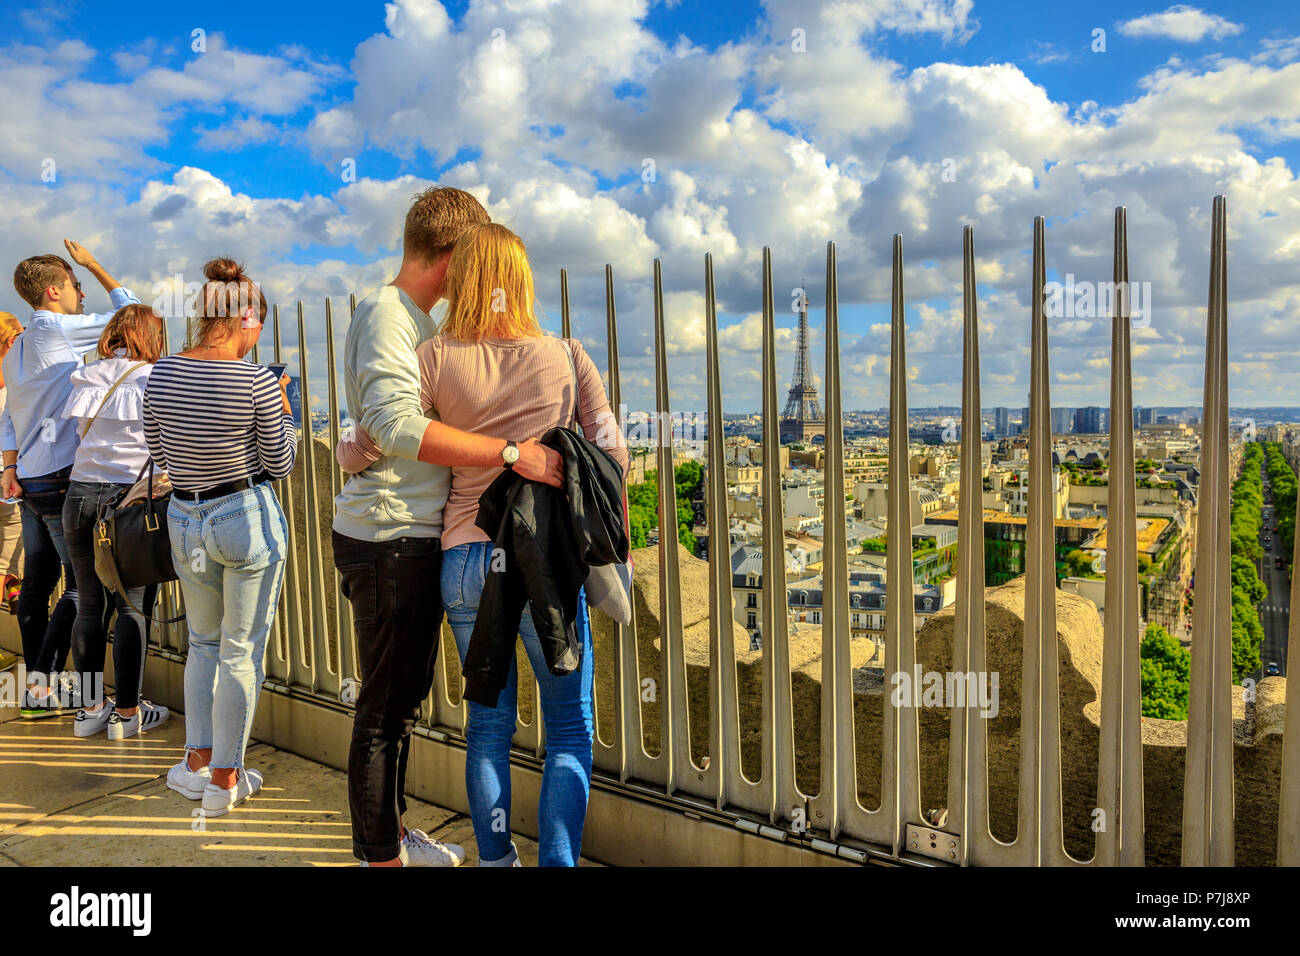 Paris, France - le 2 juillet 2017 : à la Tour Eiffel à la distance entre le haut de l'Arc de Triomphe. Monument à toits de Paris, France, Europe. Journée ensoleillée avec ciel bleu. Banque D'Images